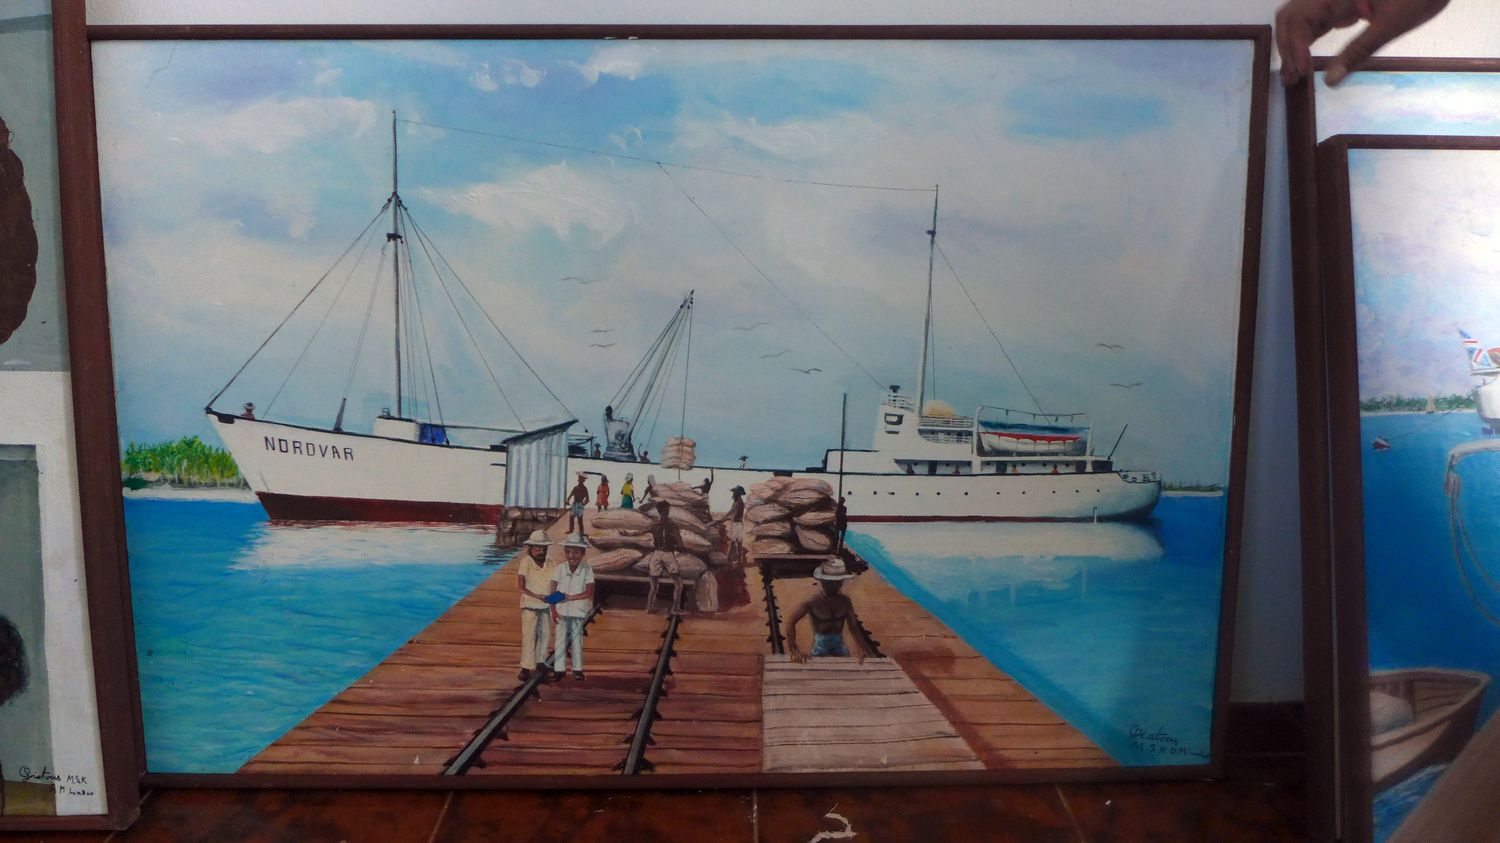 Le Nordvar fut le dernier bateau envoyé sur les îles afin de déplacer les populations vers Maurice et les Seychelles. Il a transporté les derniers habitants de l’archipel. Ils n’allaient jamais plus pouvoir y retourner. La déportation des Chagossiens a eu lieu entre 1967 et 1973.